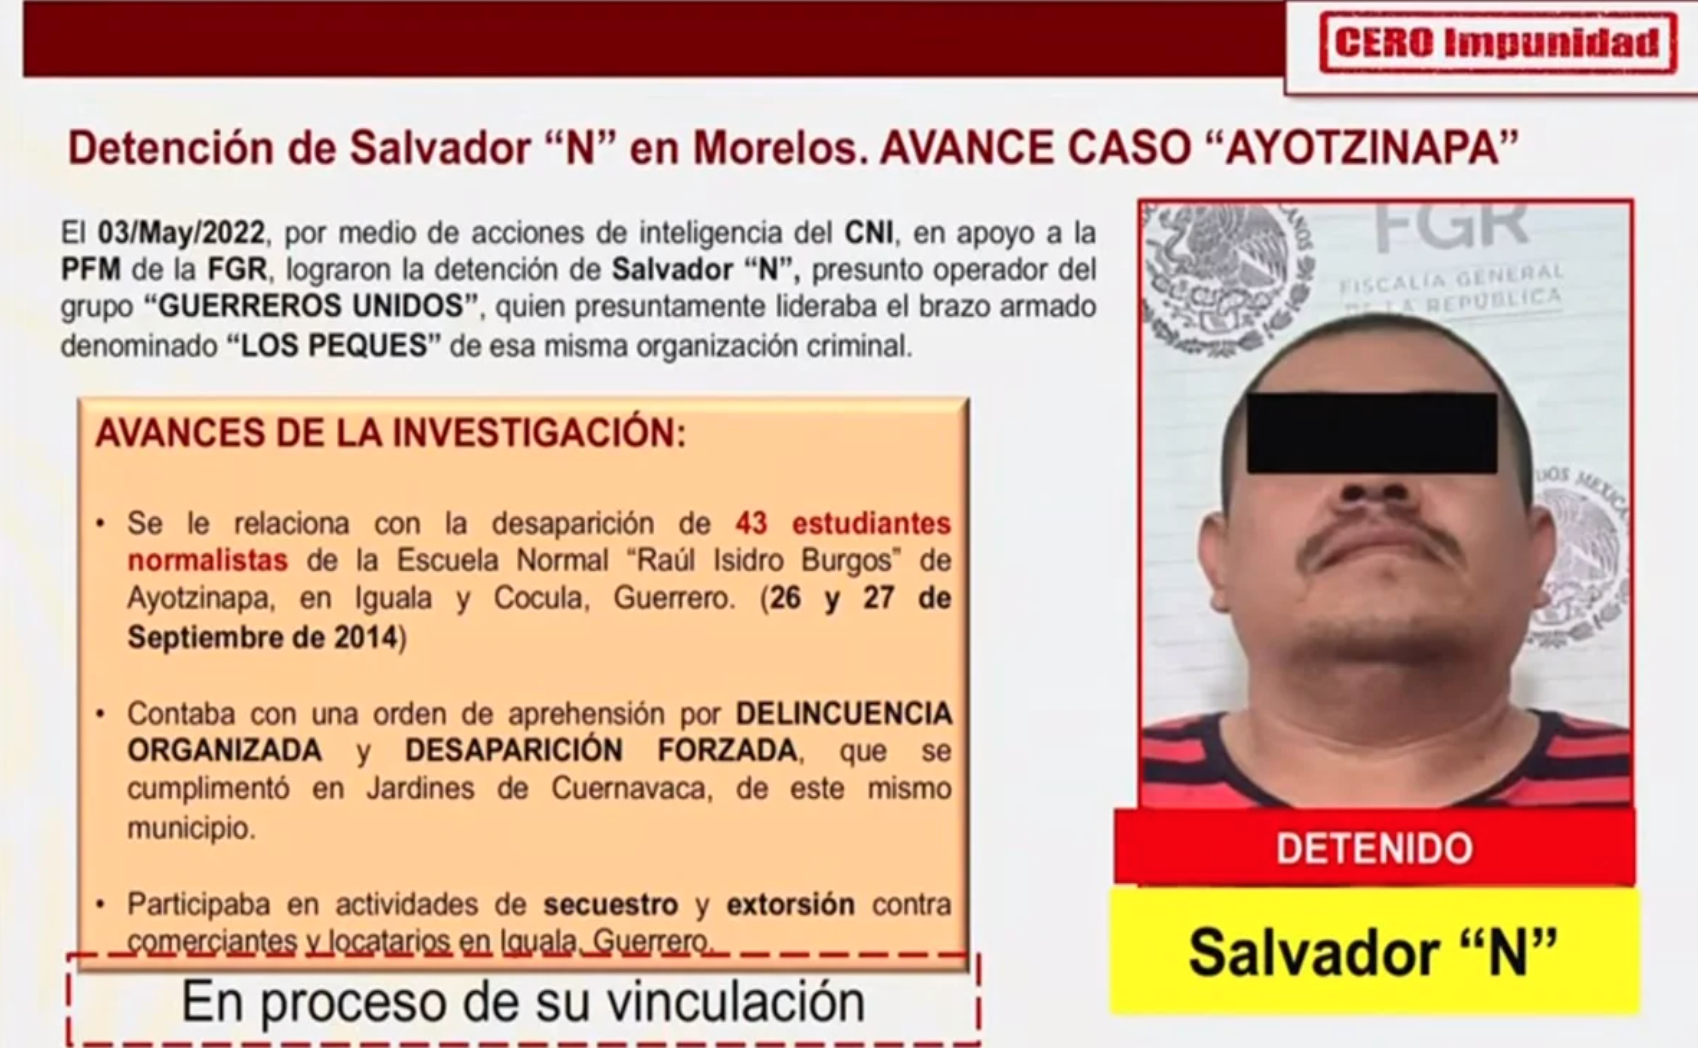 Detienen a Salvador ‘N’ presunto operador de Guerreros Unidos vinculado al caso Ayotzinapa